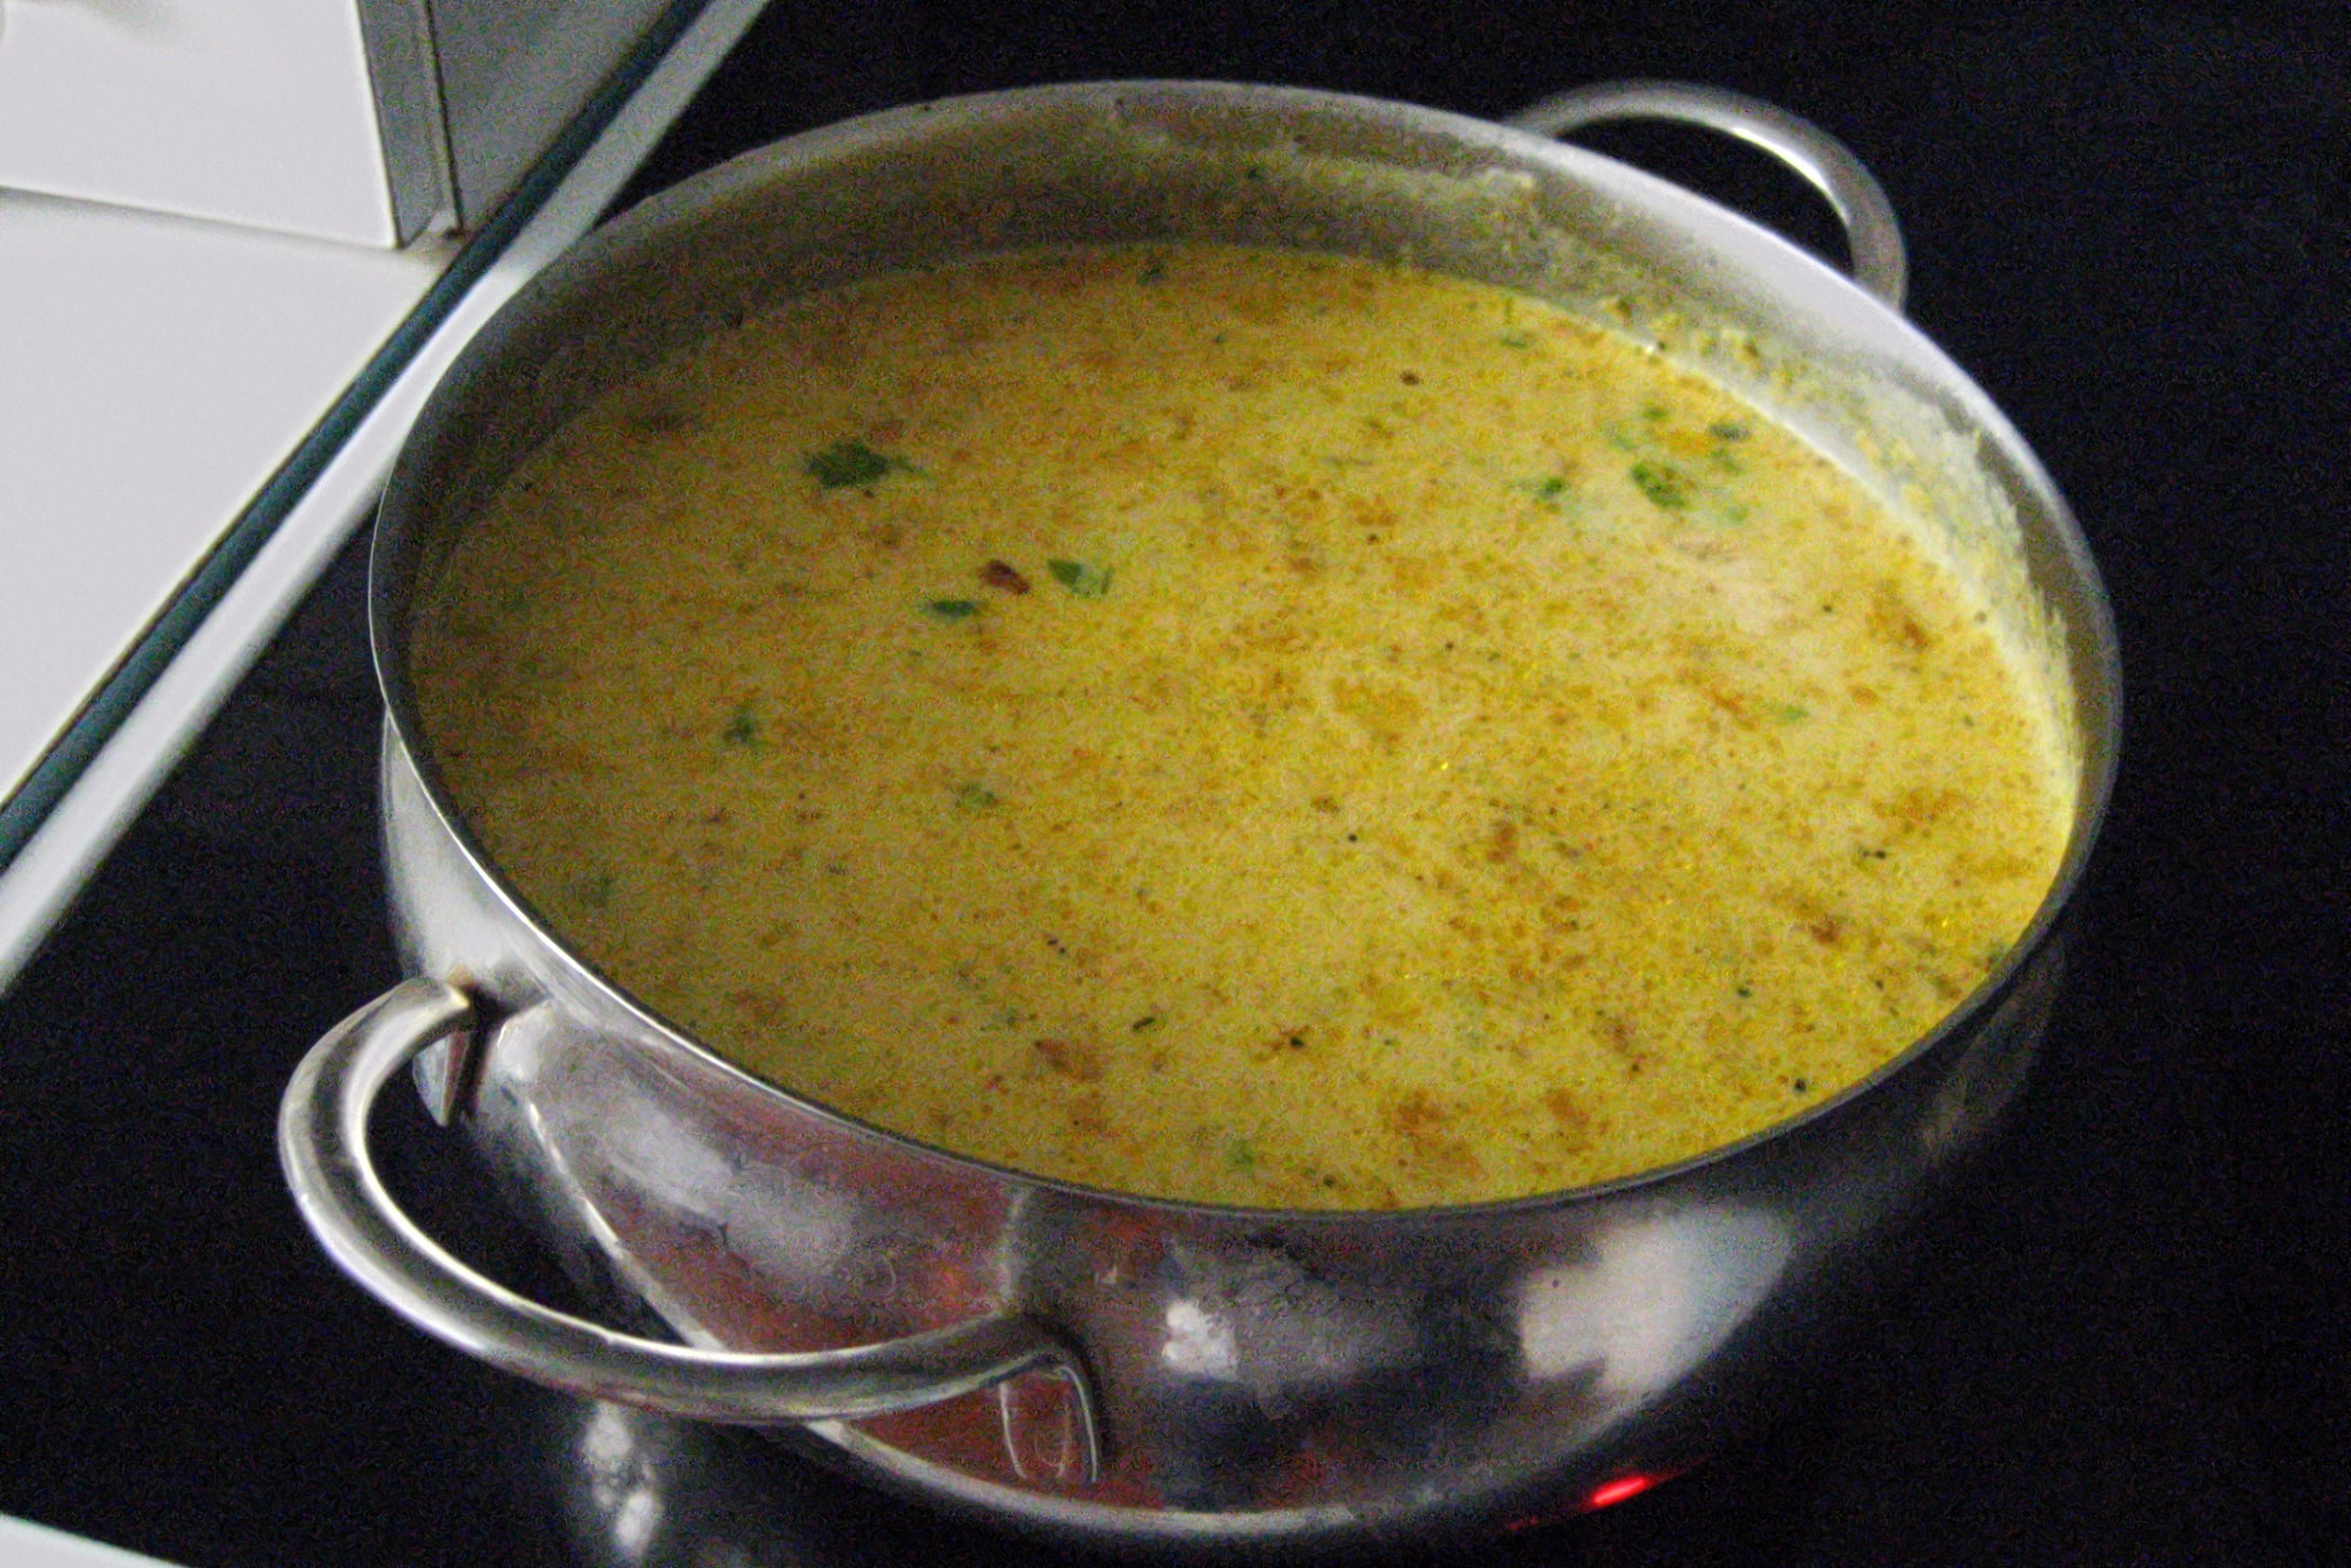 Суп с плавленым сыром и колбасой